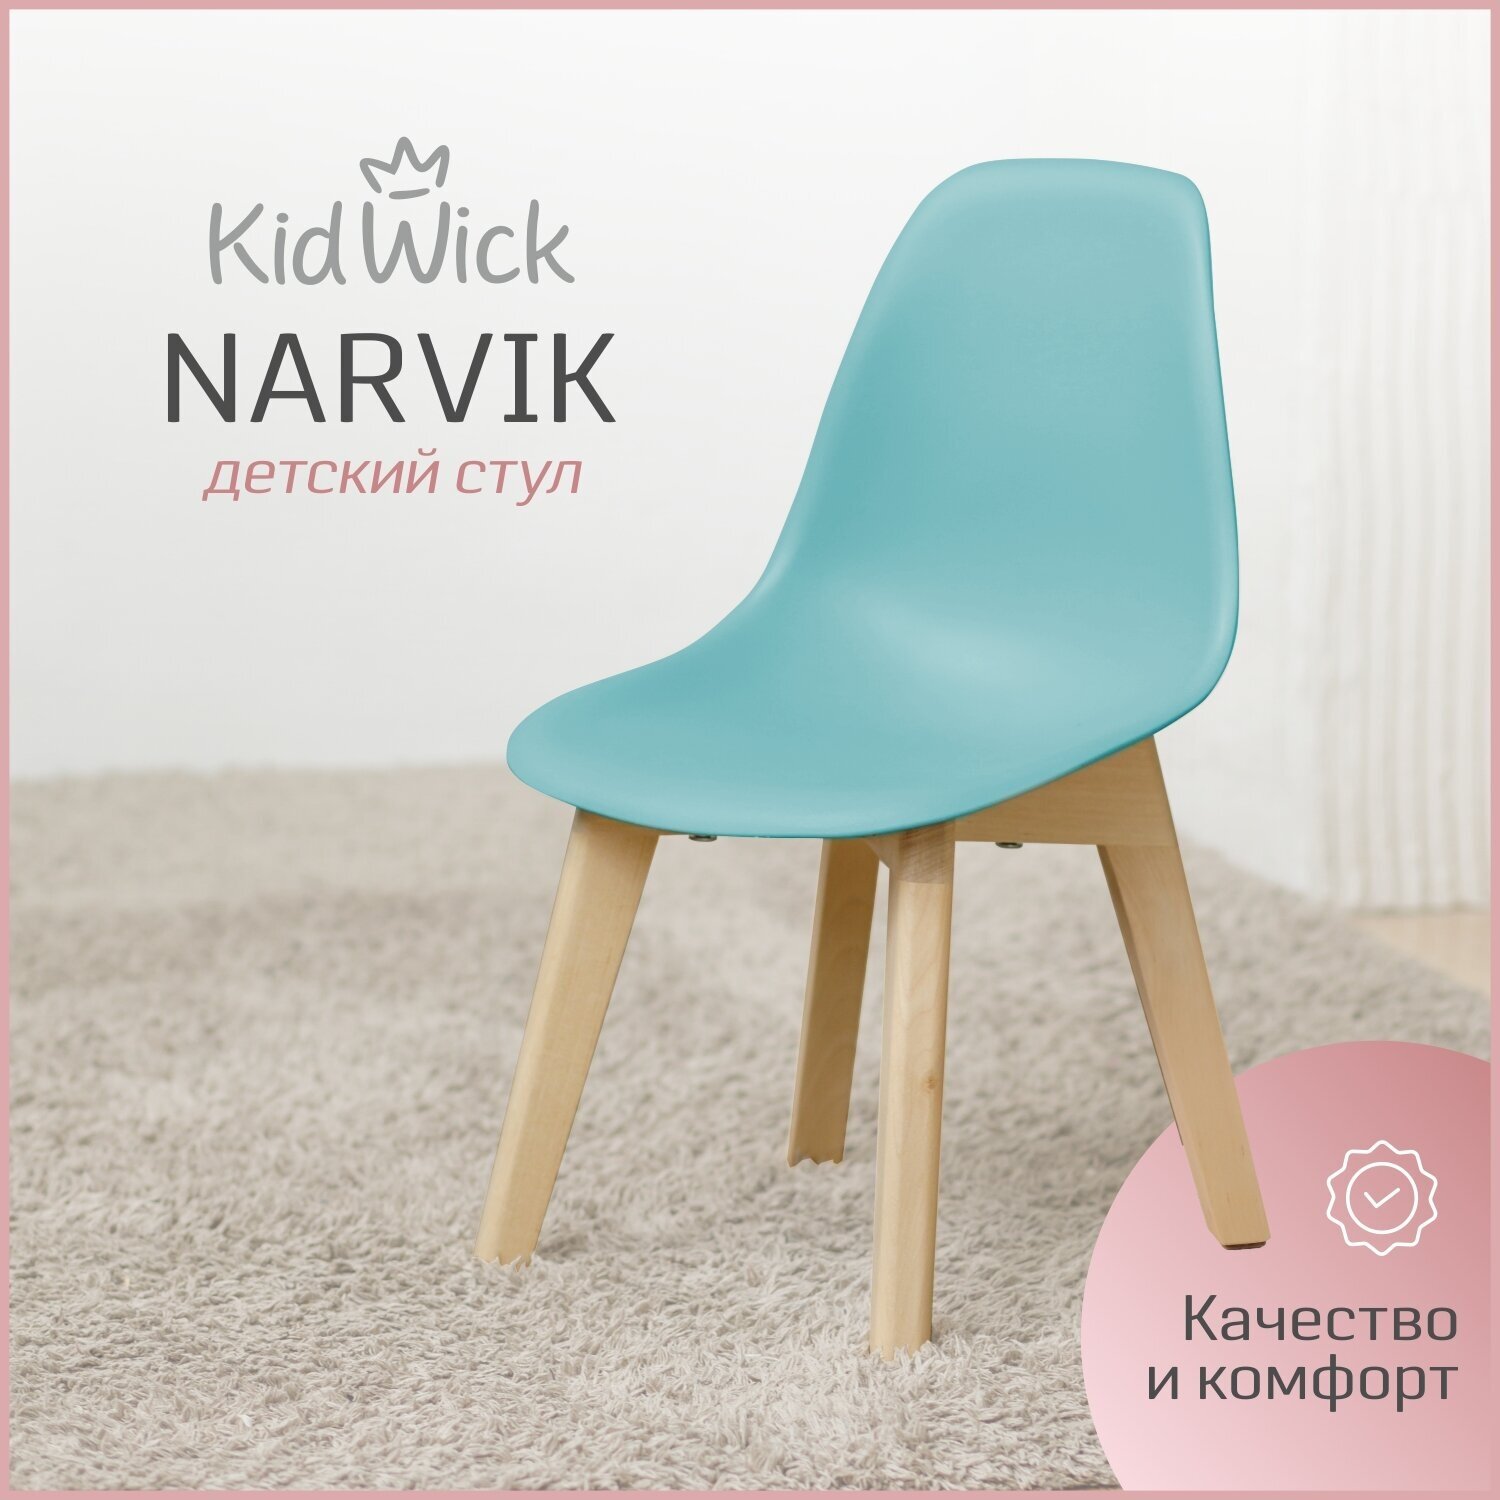 Стул детский Kidwick стульчик со спинкой «Narvik», бирюзовый